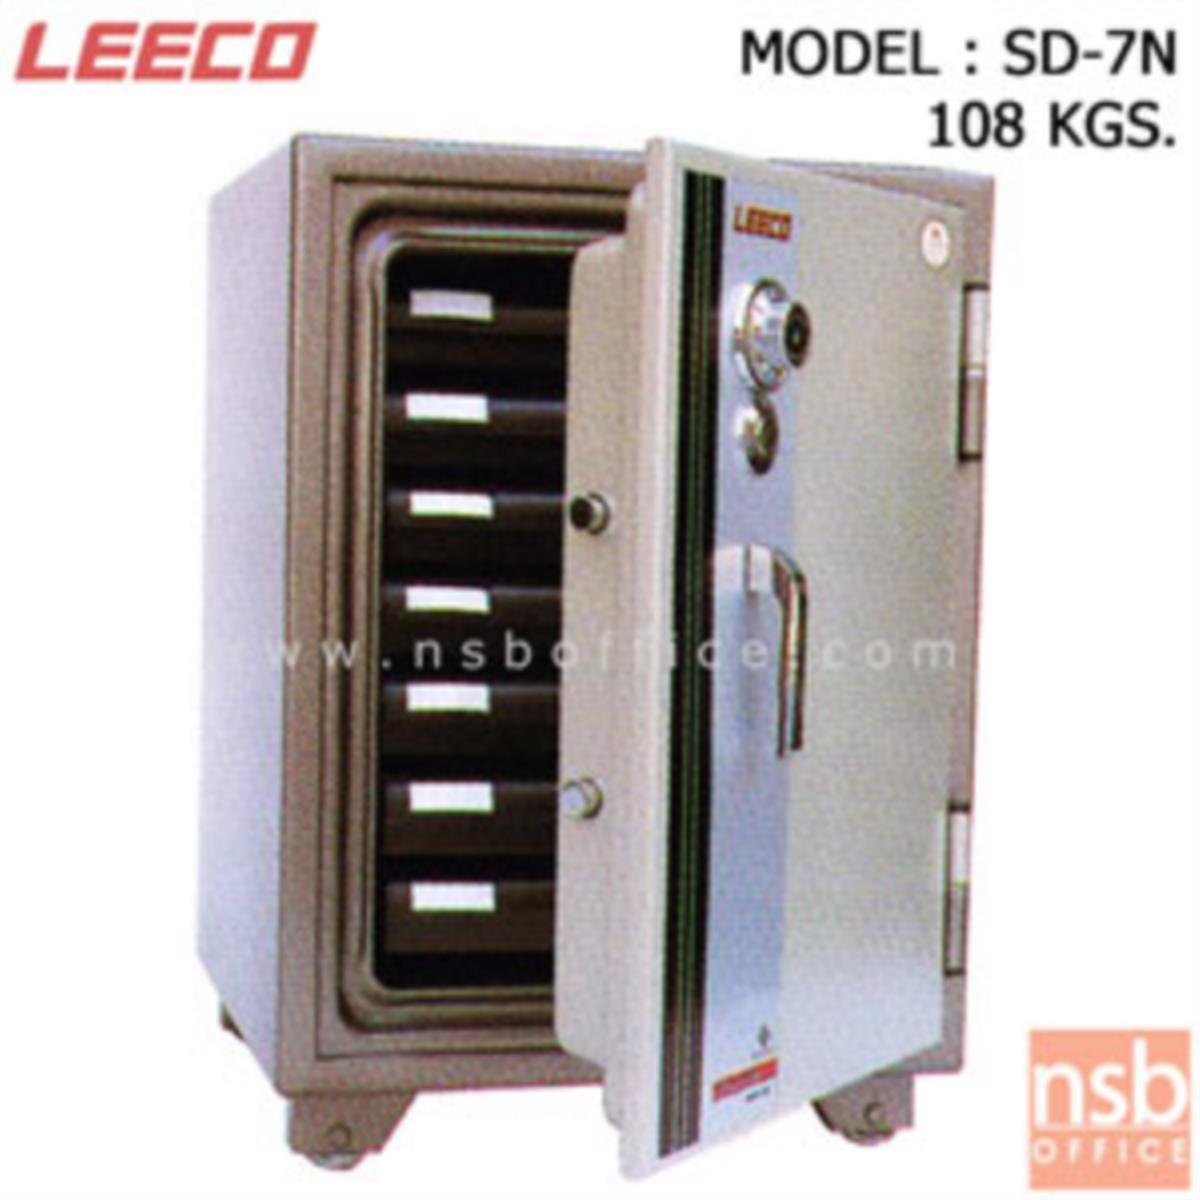 F02A051:ตู้เซฟนิรภัย 108 กก.(แนวตั้ง) ลีโก้ รุ่น SD-7N มี 1 กุญแจ 1 รหัส มือจับบิด (มีถาดพลาสติก 7 ลิ้นชัก)   